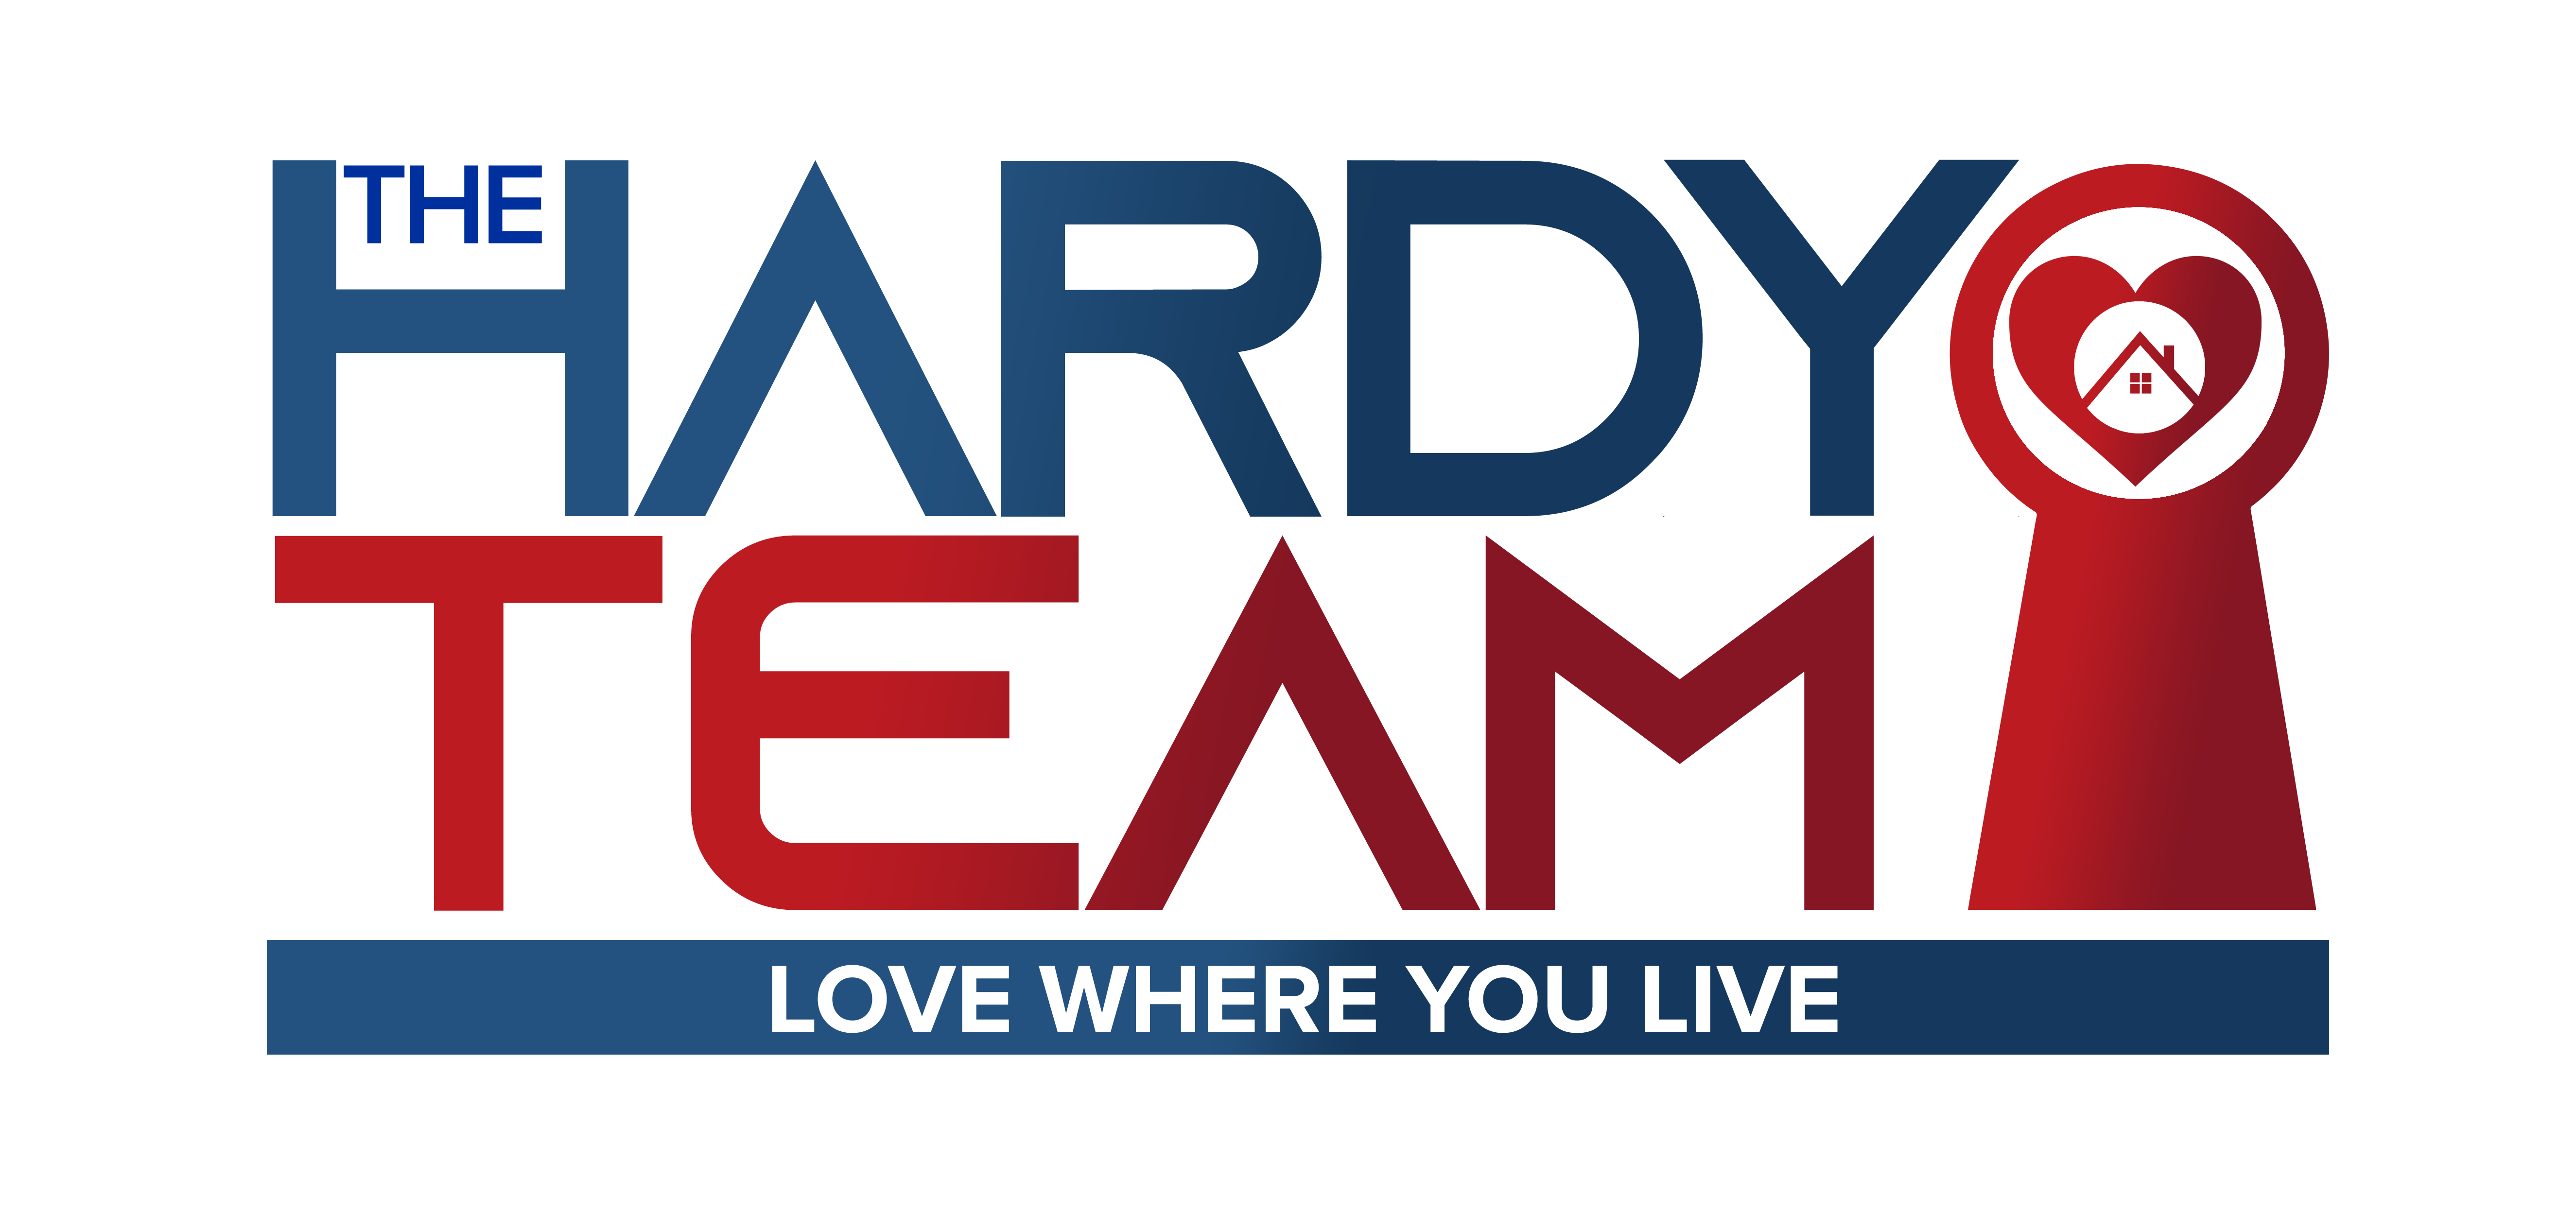 The Hardy Team